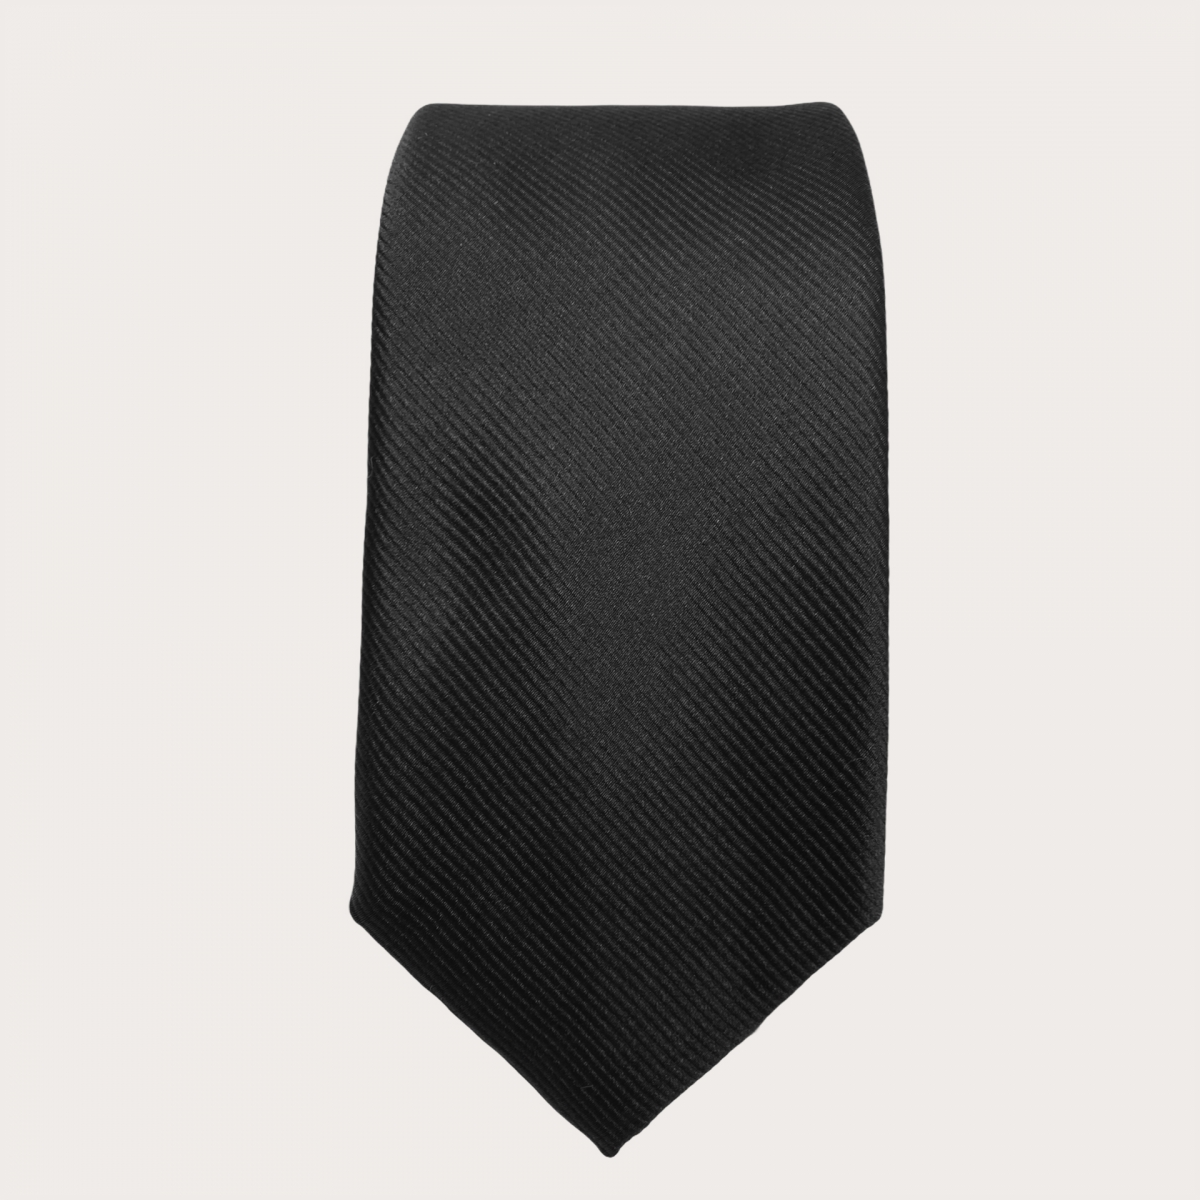 BRUCLE Cravate classique en pure soie, noir